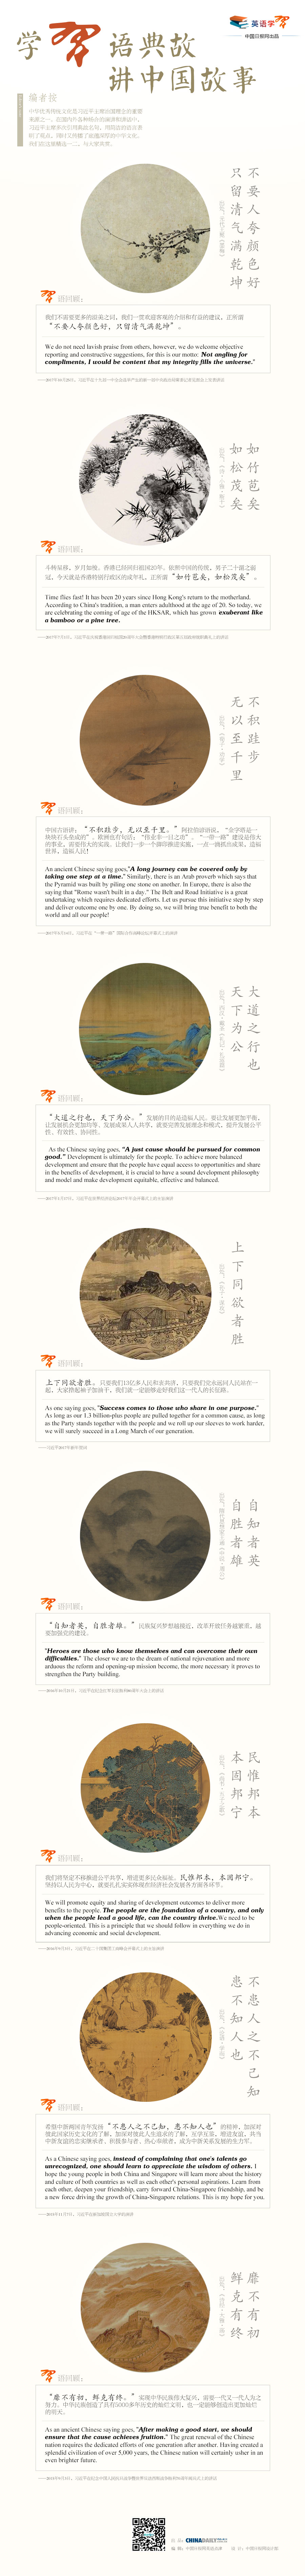 学“习”语典故 讲中国故事